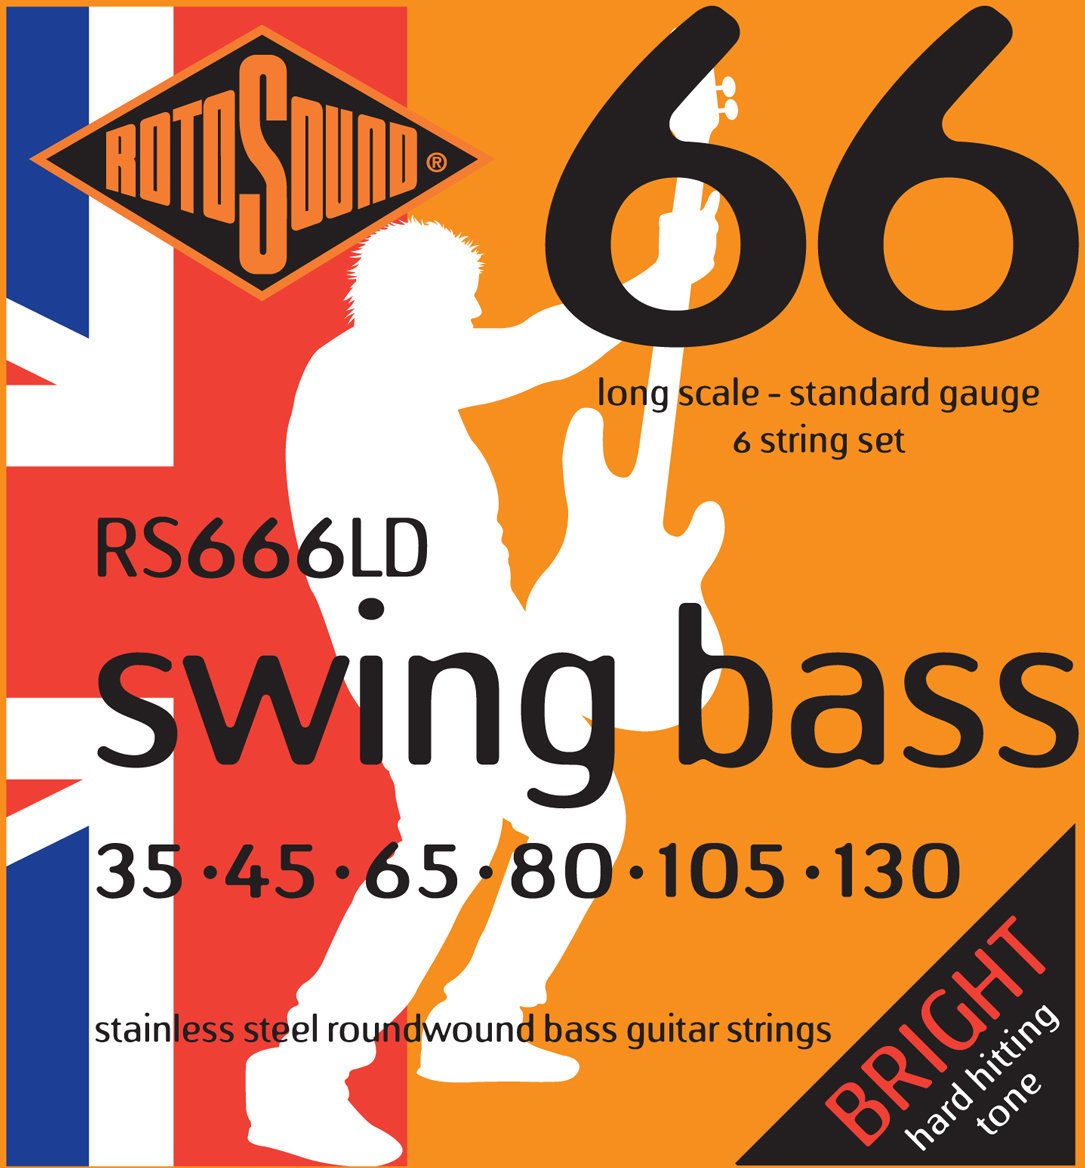 Jeux de 6 cordes basses Rotosound RS 666 LD